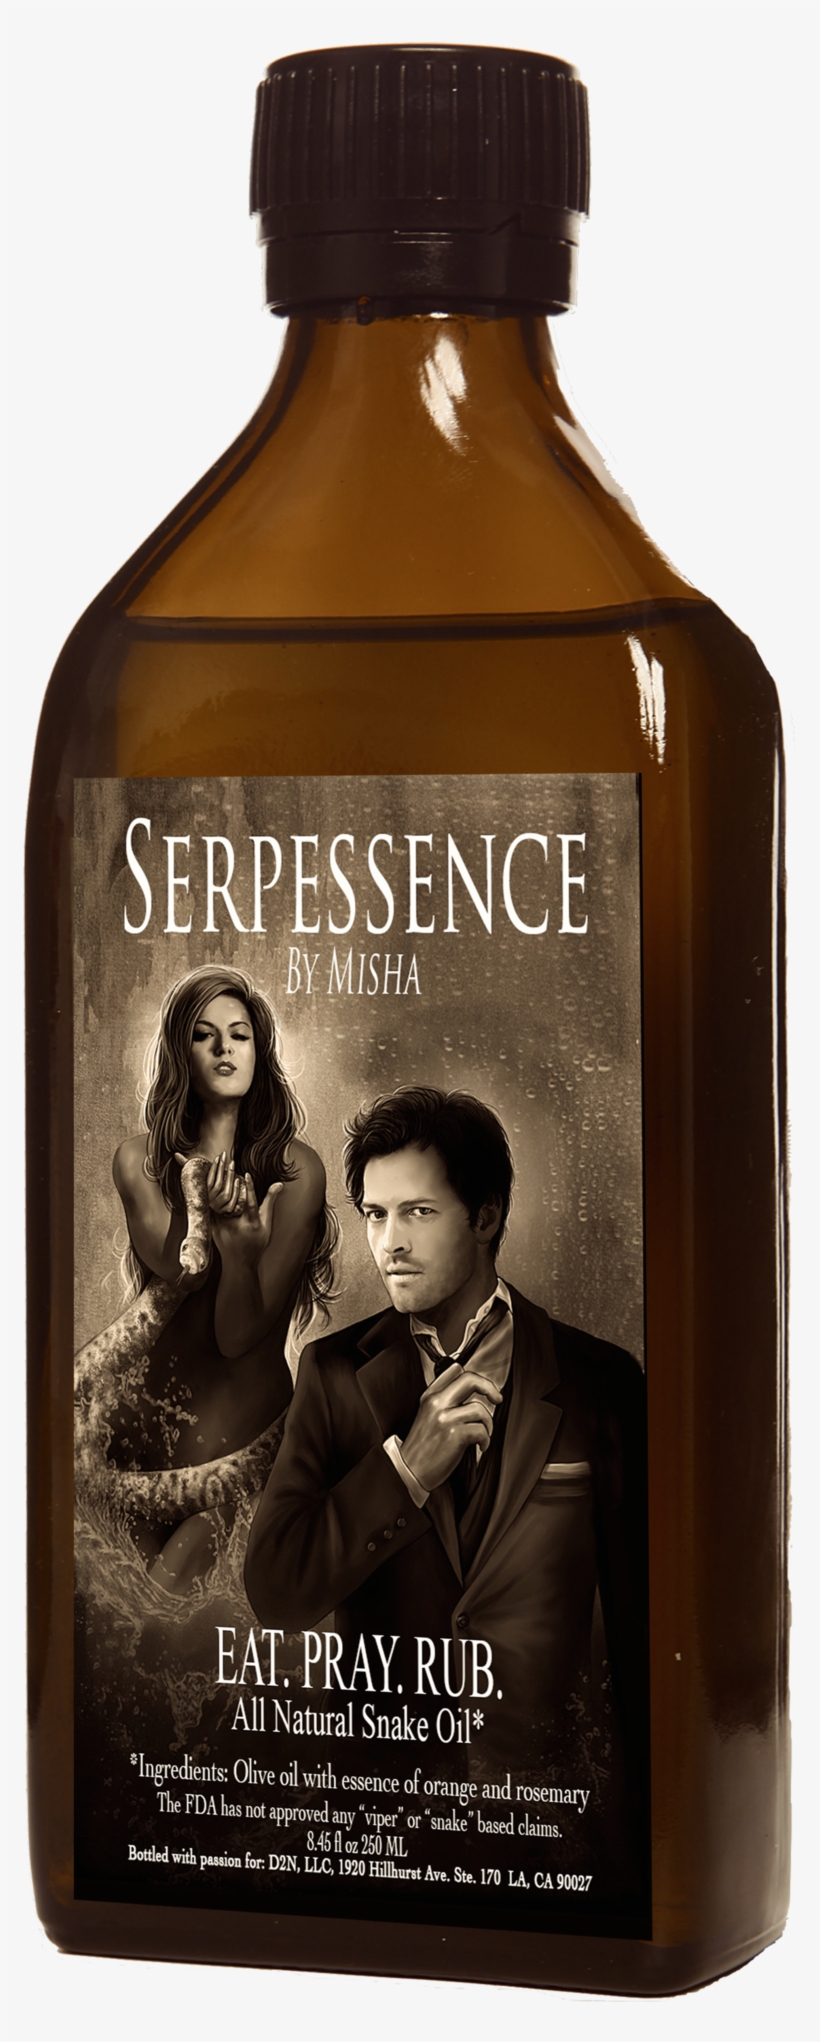 Serpessence “misha's Special Olive Oil” - Pestilence Ebook, transparent png #3166230